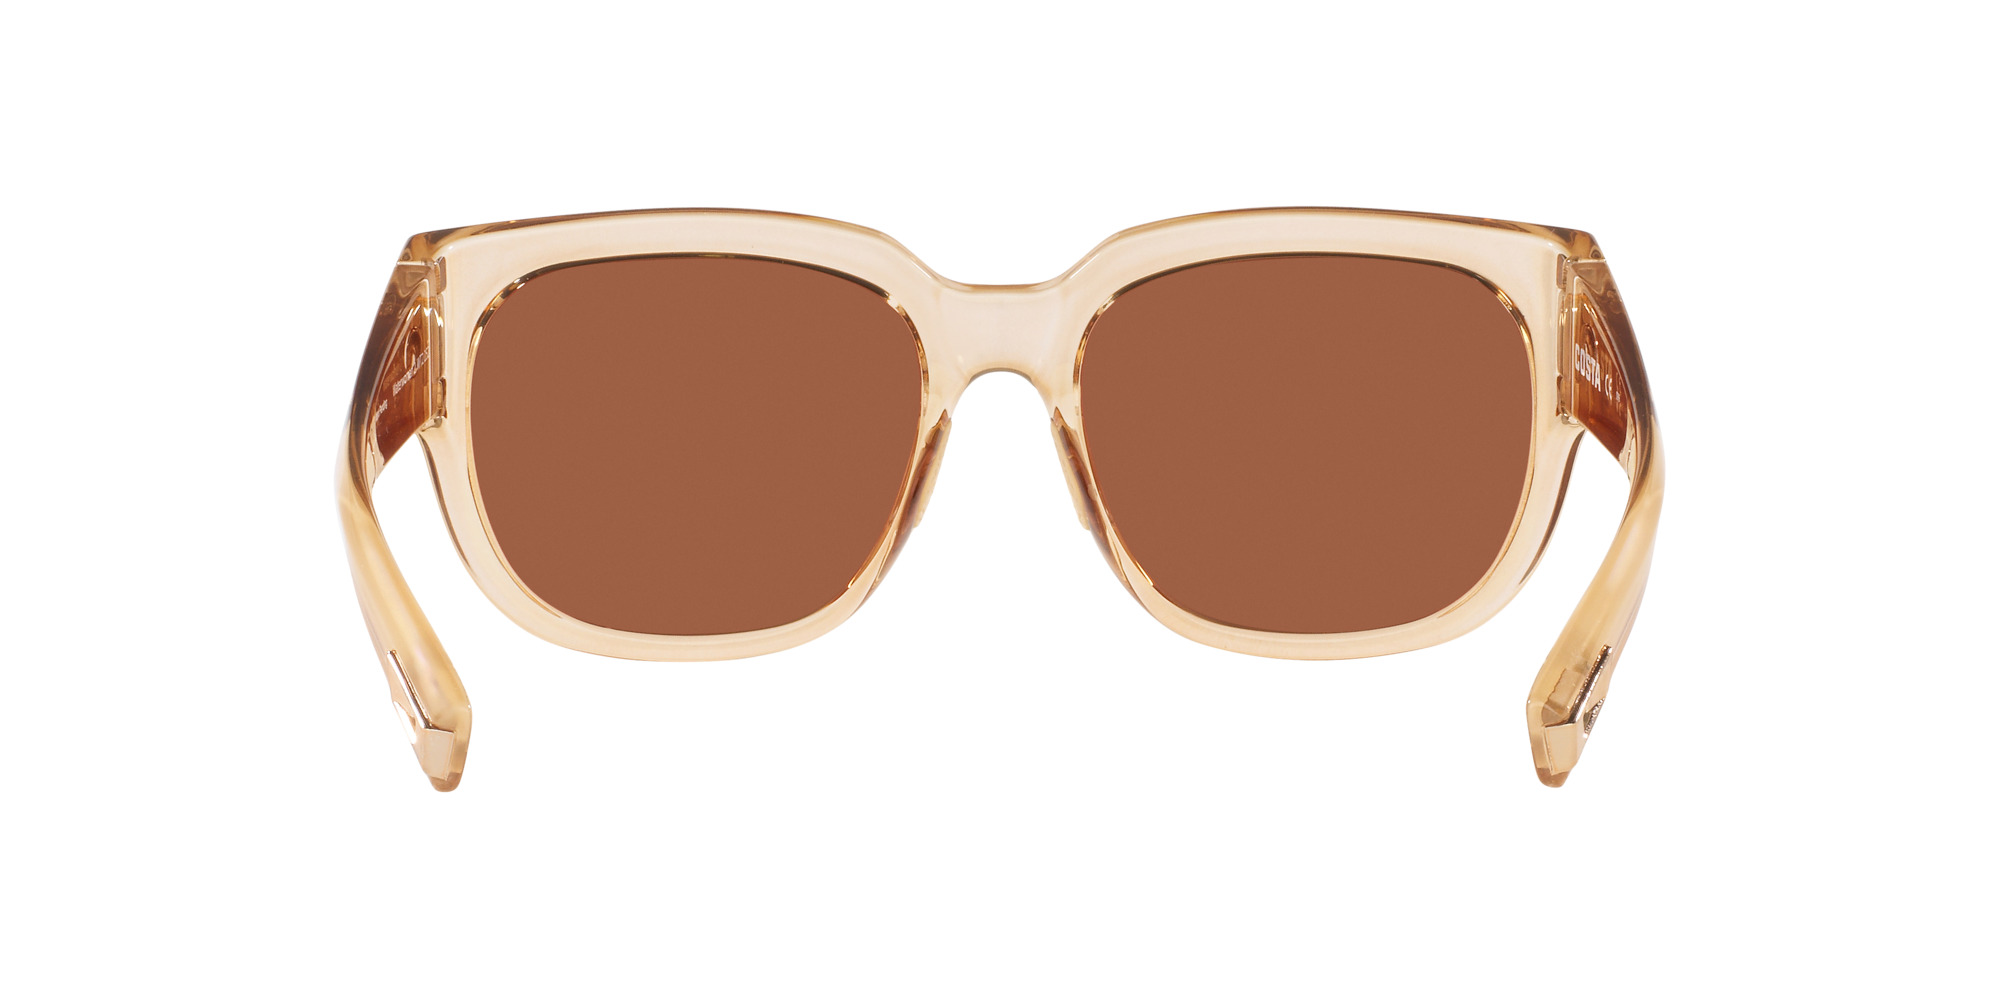 Waterwoman 2 Polarized Sunglasses in Copper Silver Mirror | Costa 